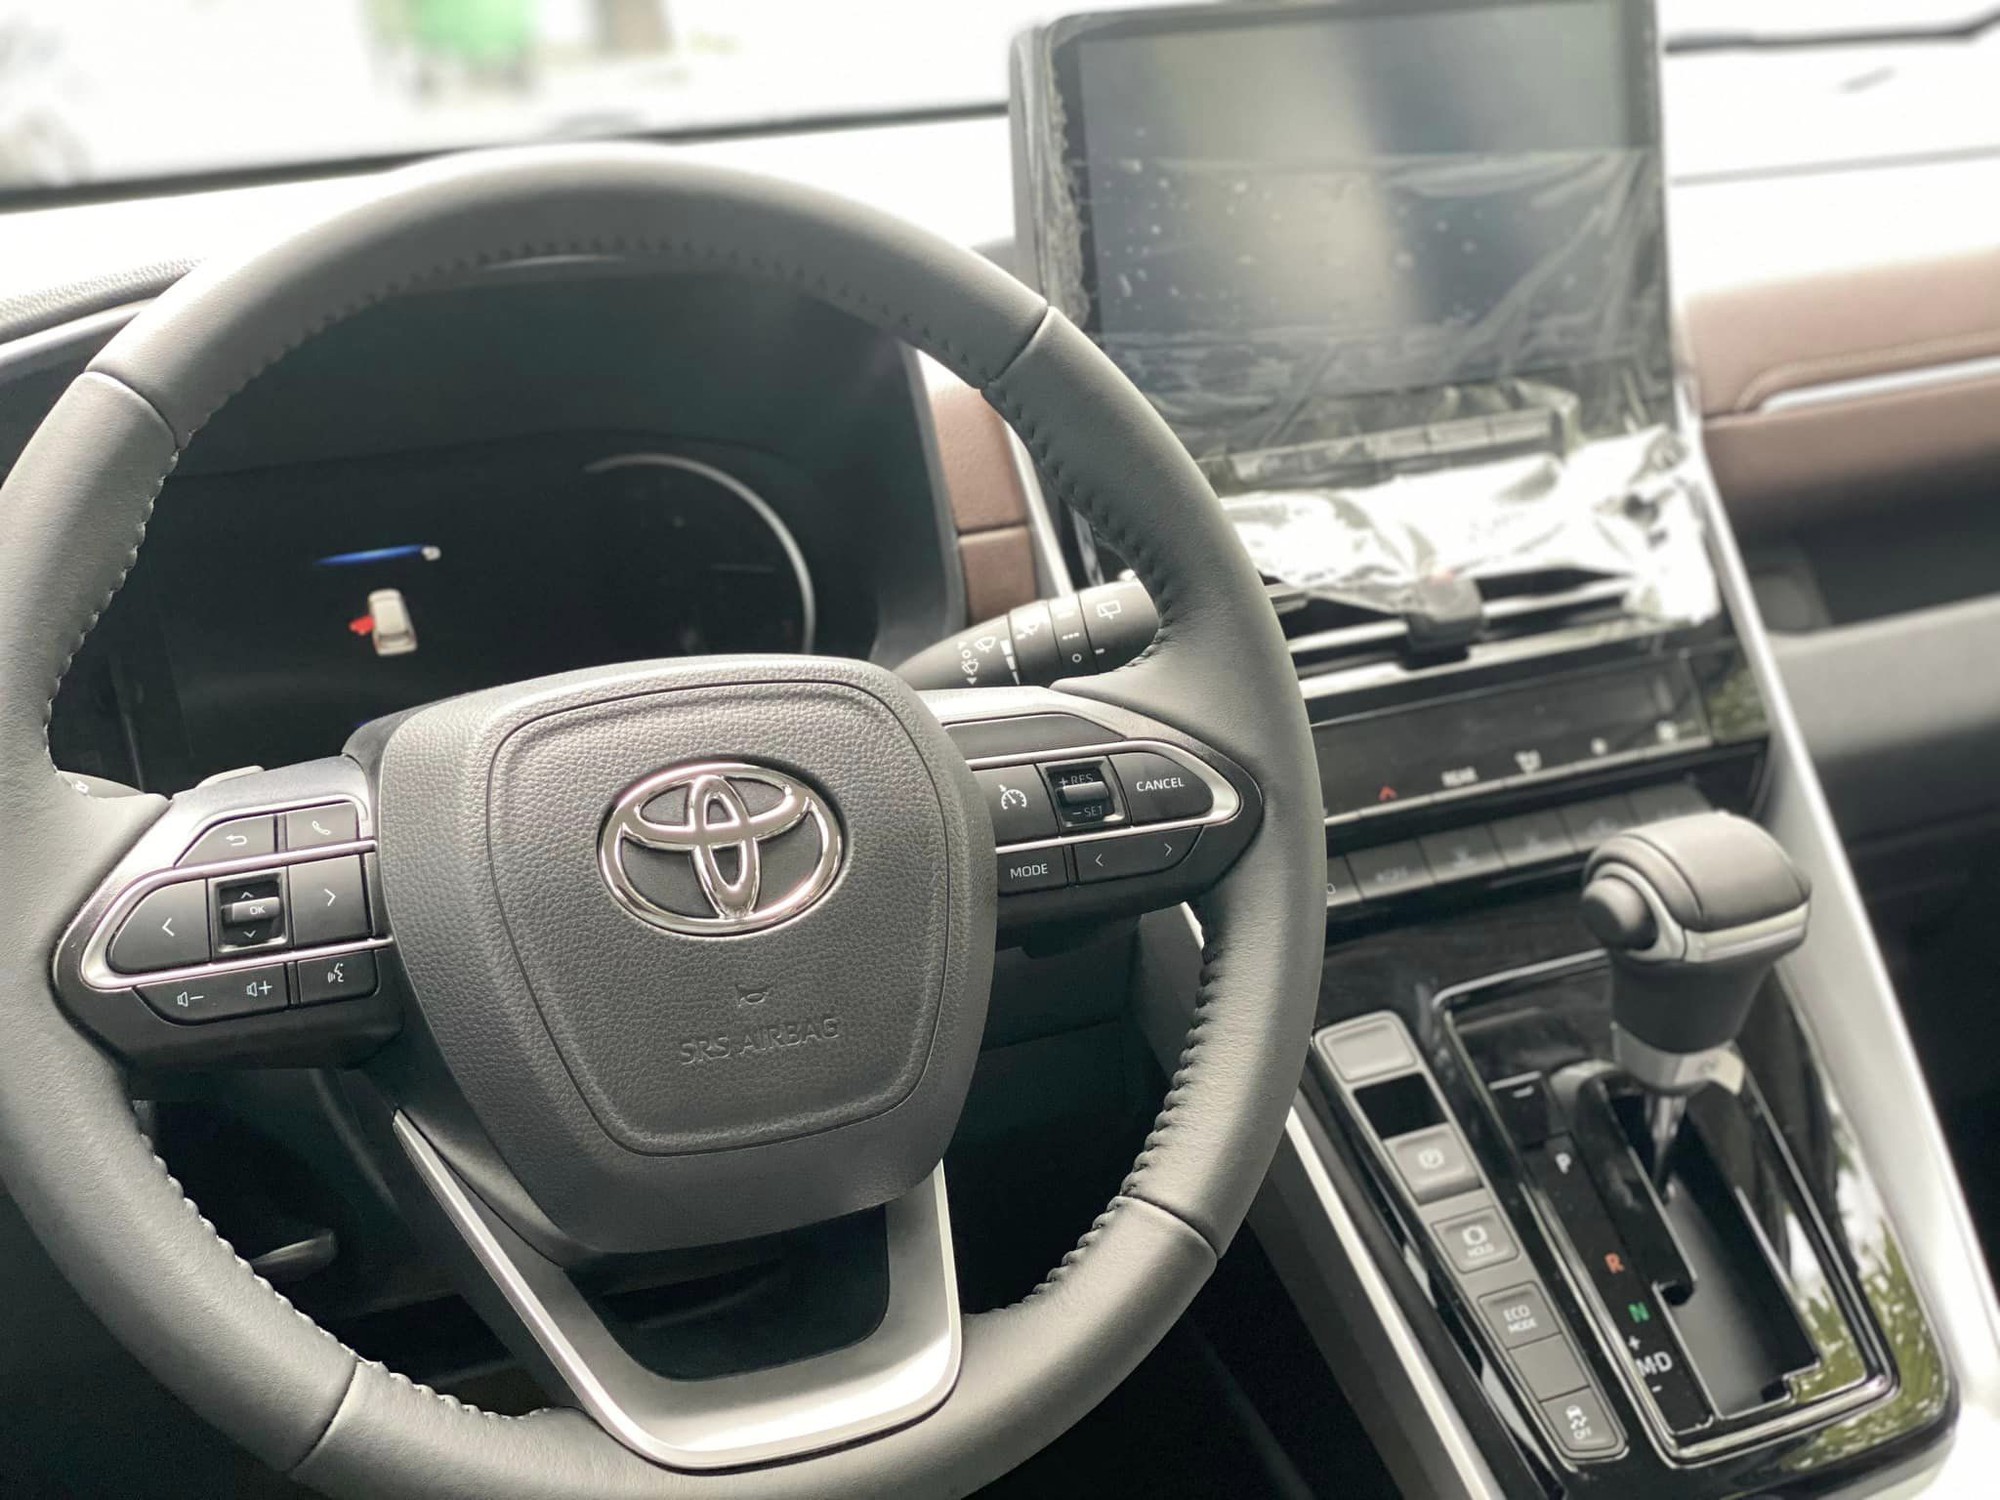 Chi tiết Toyota Innova Cross 2.0V vừa về đại lý: Thoát mác dịch vụ, kỳ vọng giá tốt đấu Hyundai Custin - Ảnh 3.